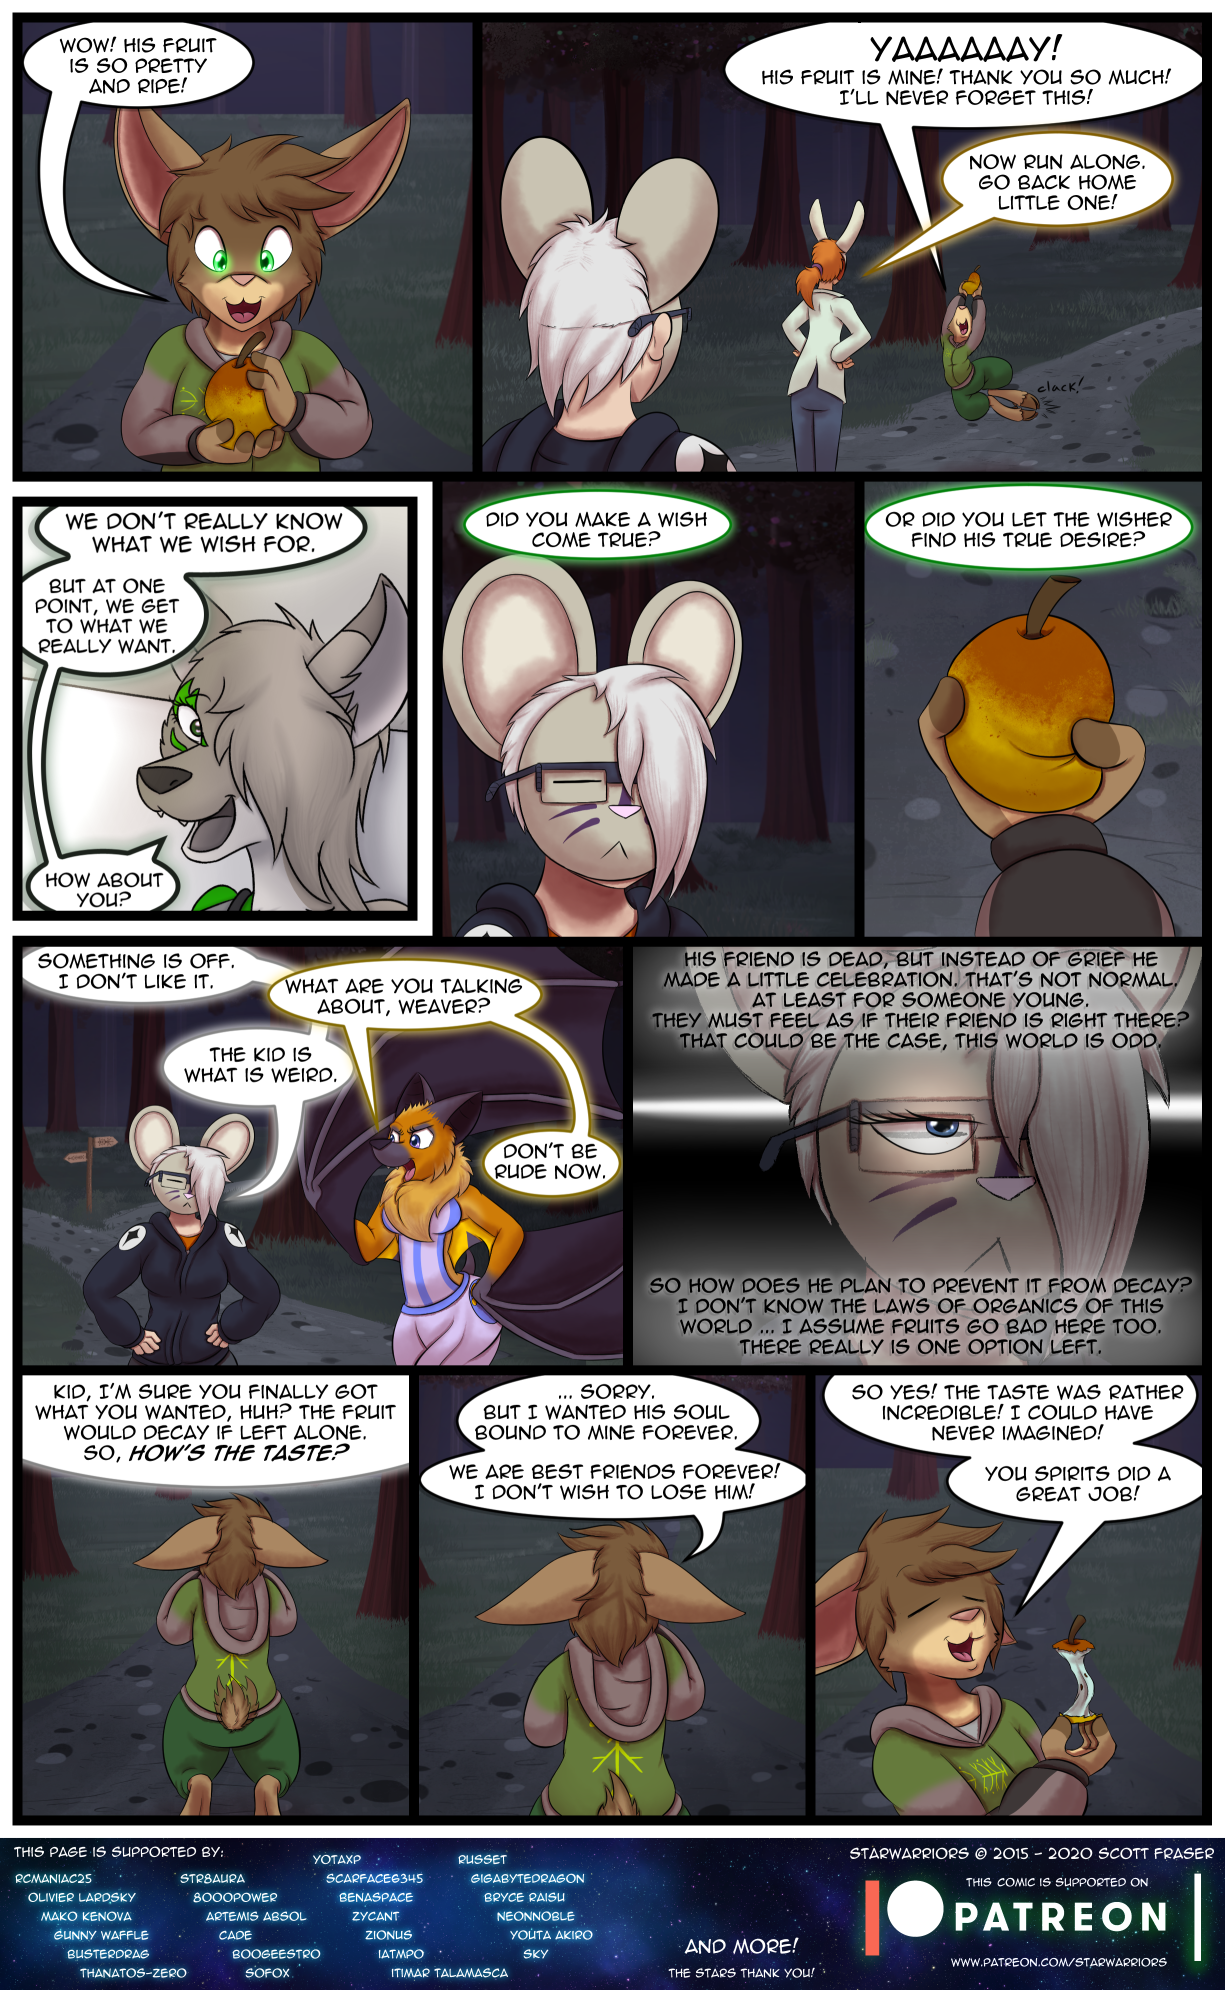 Ch5 Page 19 – True Wish